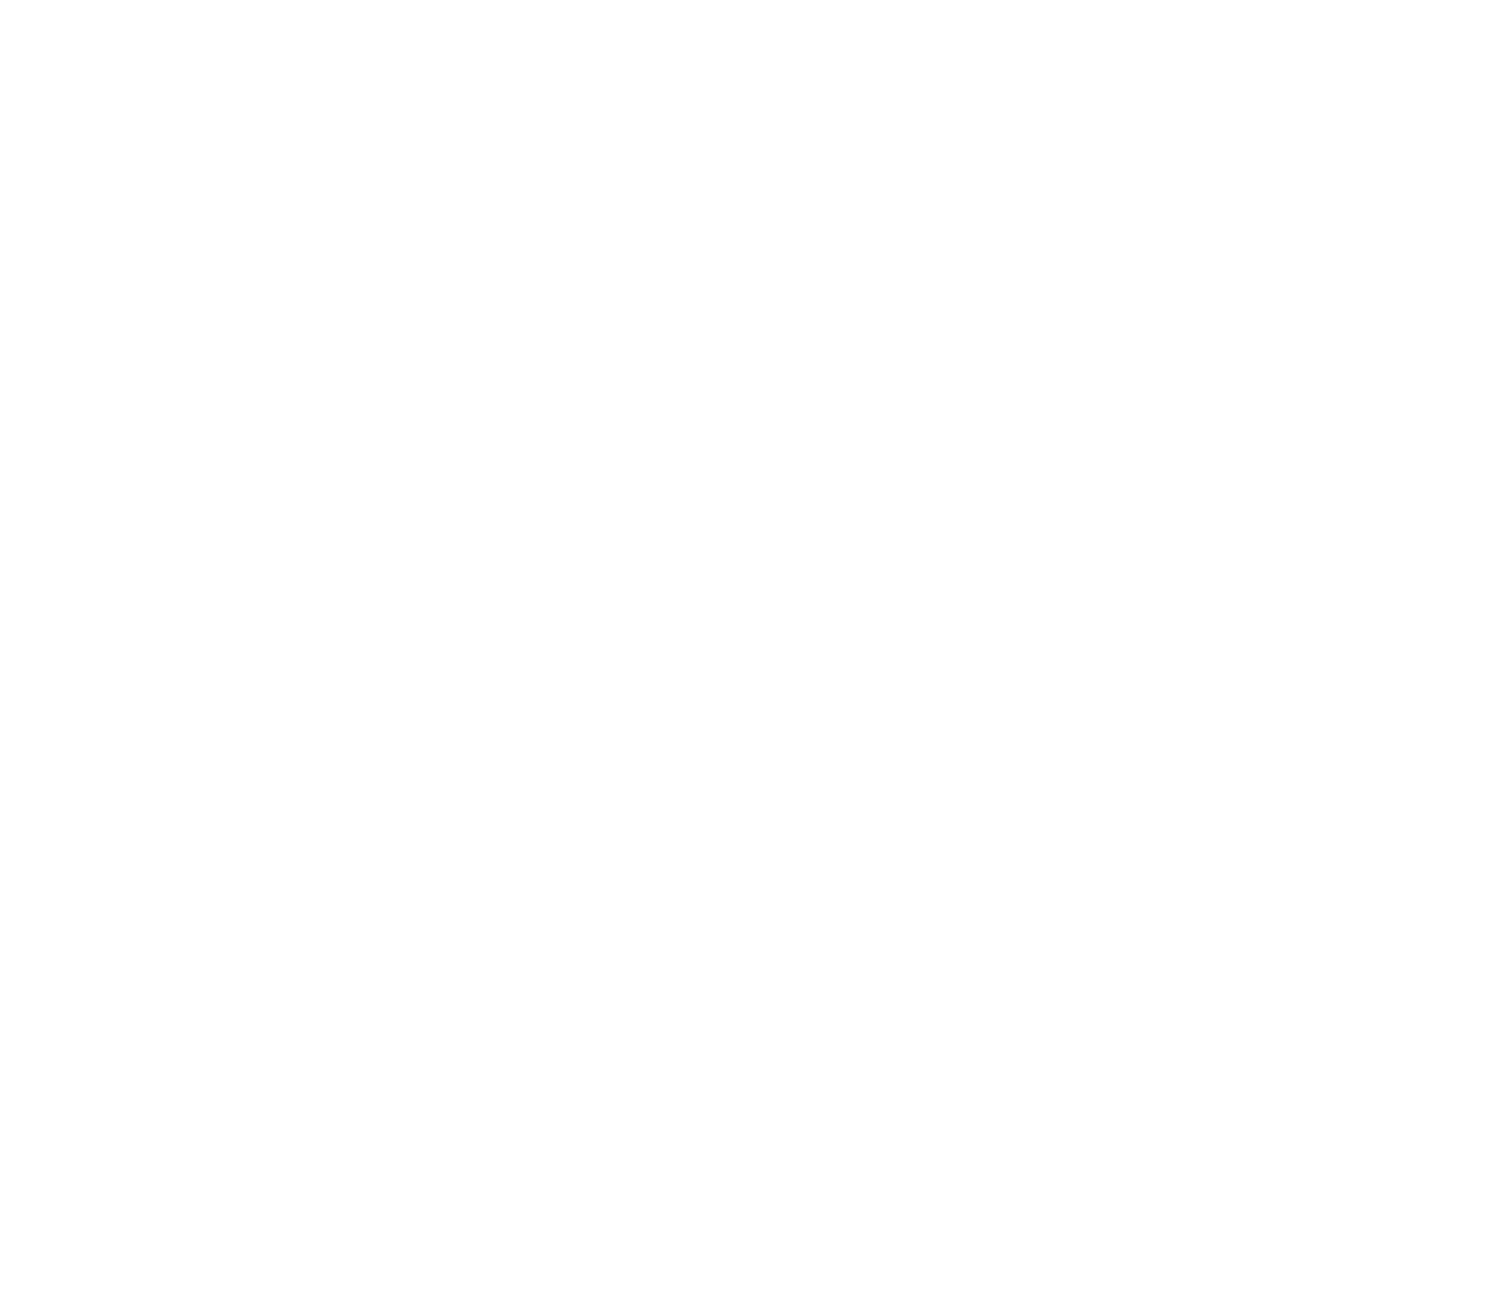 SumArte x Guate